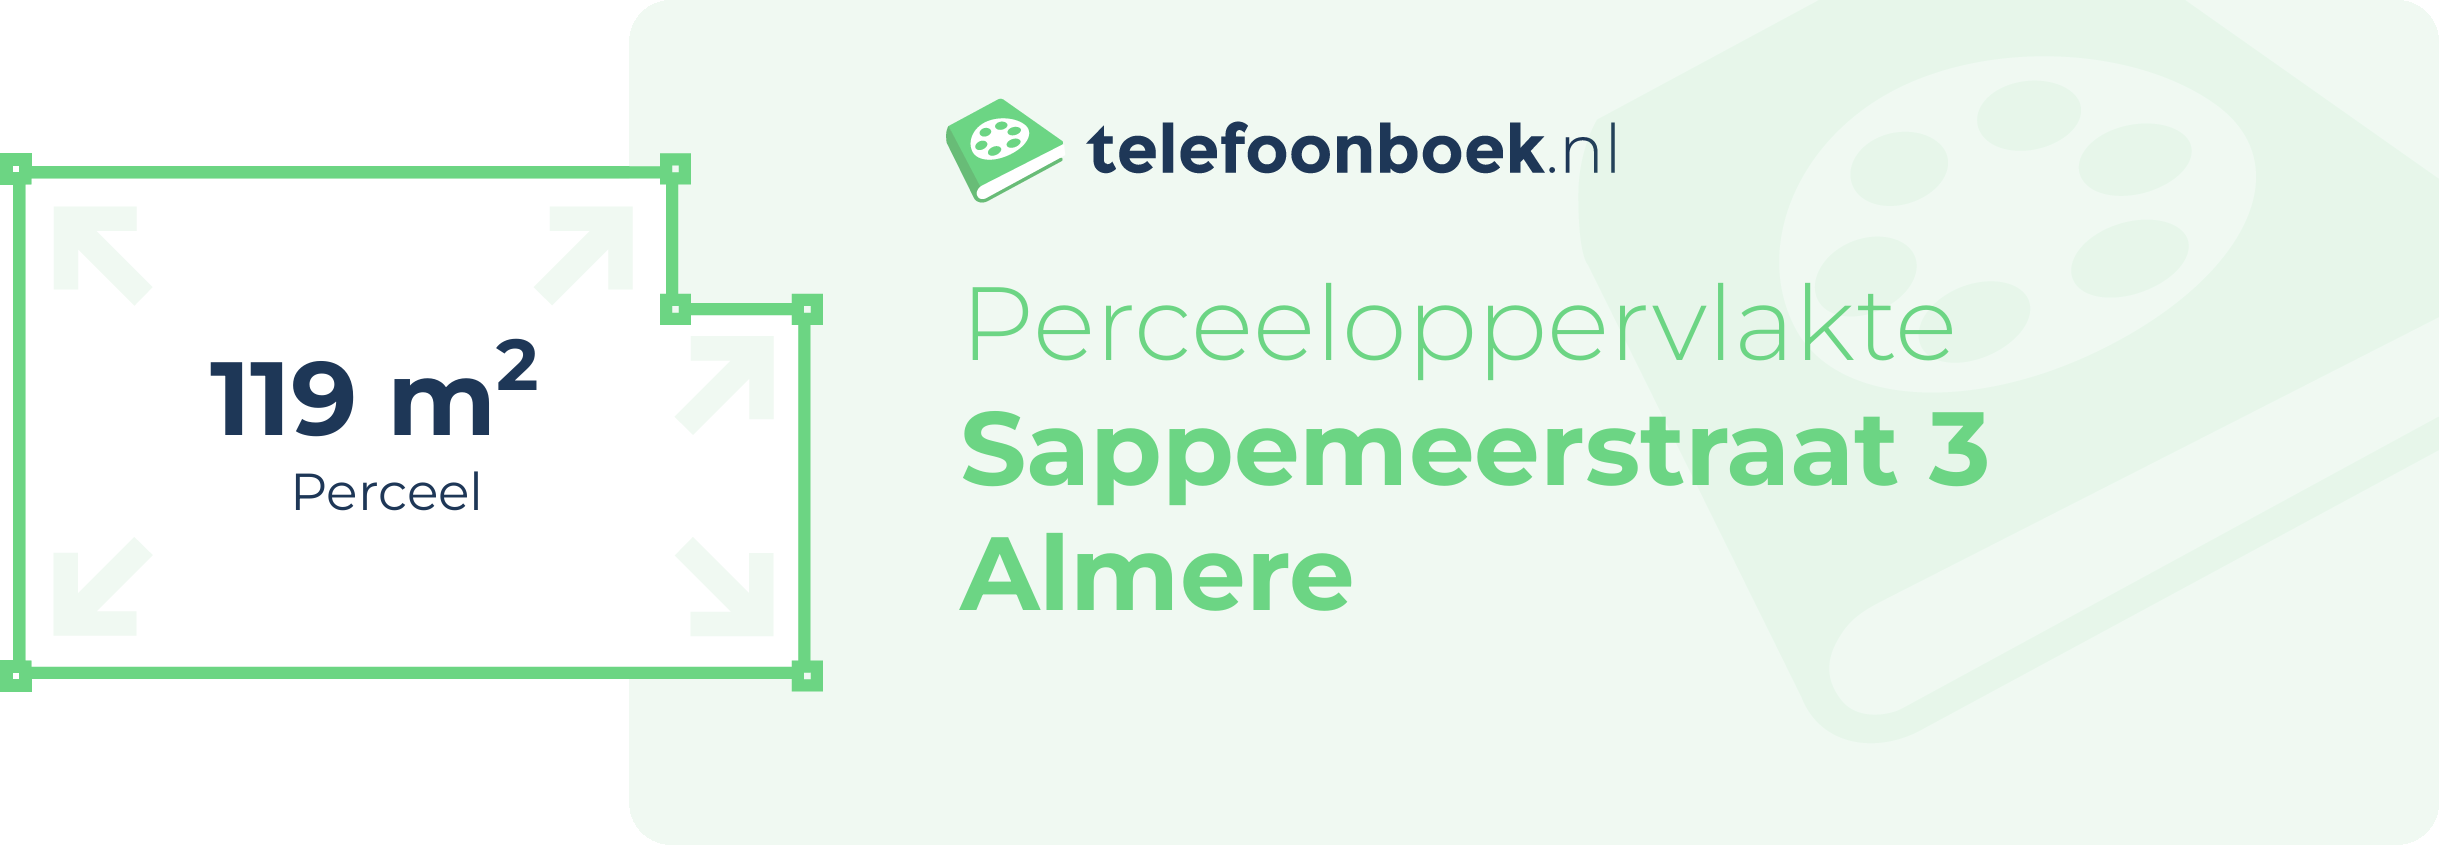 Perceeloppervlakte Sappemeerstraat 3 Almere